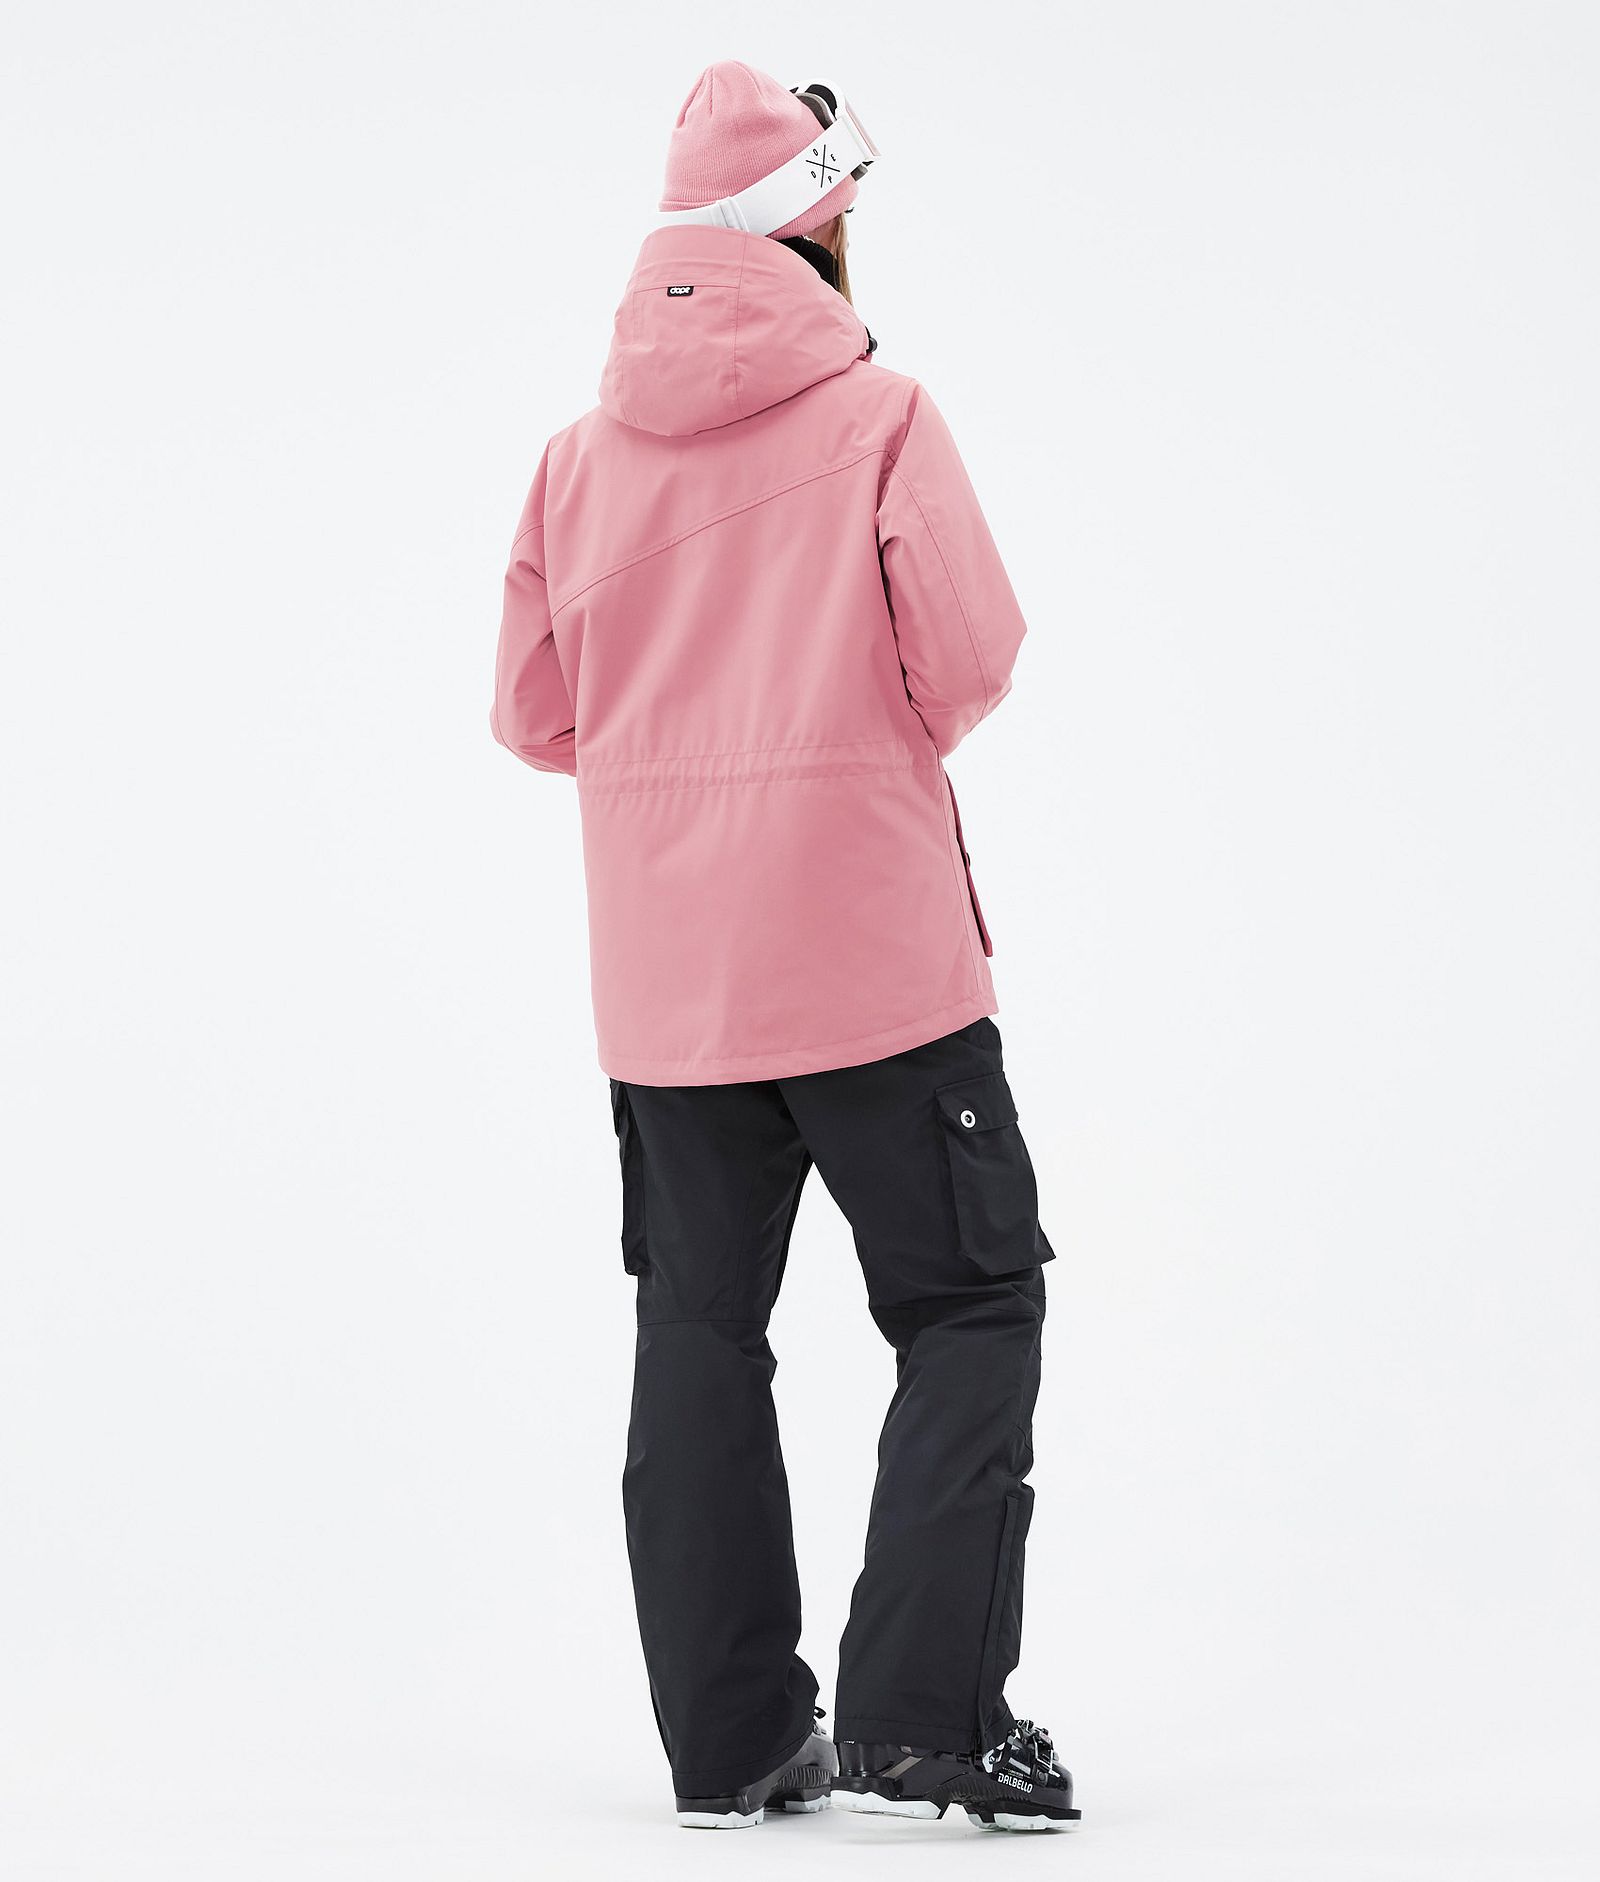 Adept W Ski Jacket Women Pink/Black, Image 5 of 10